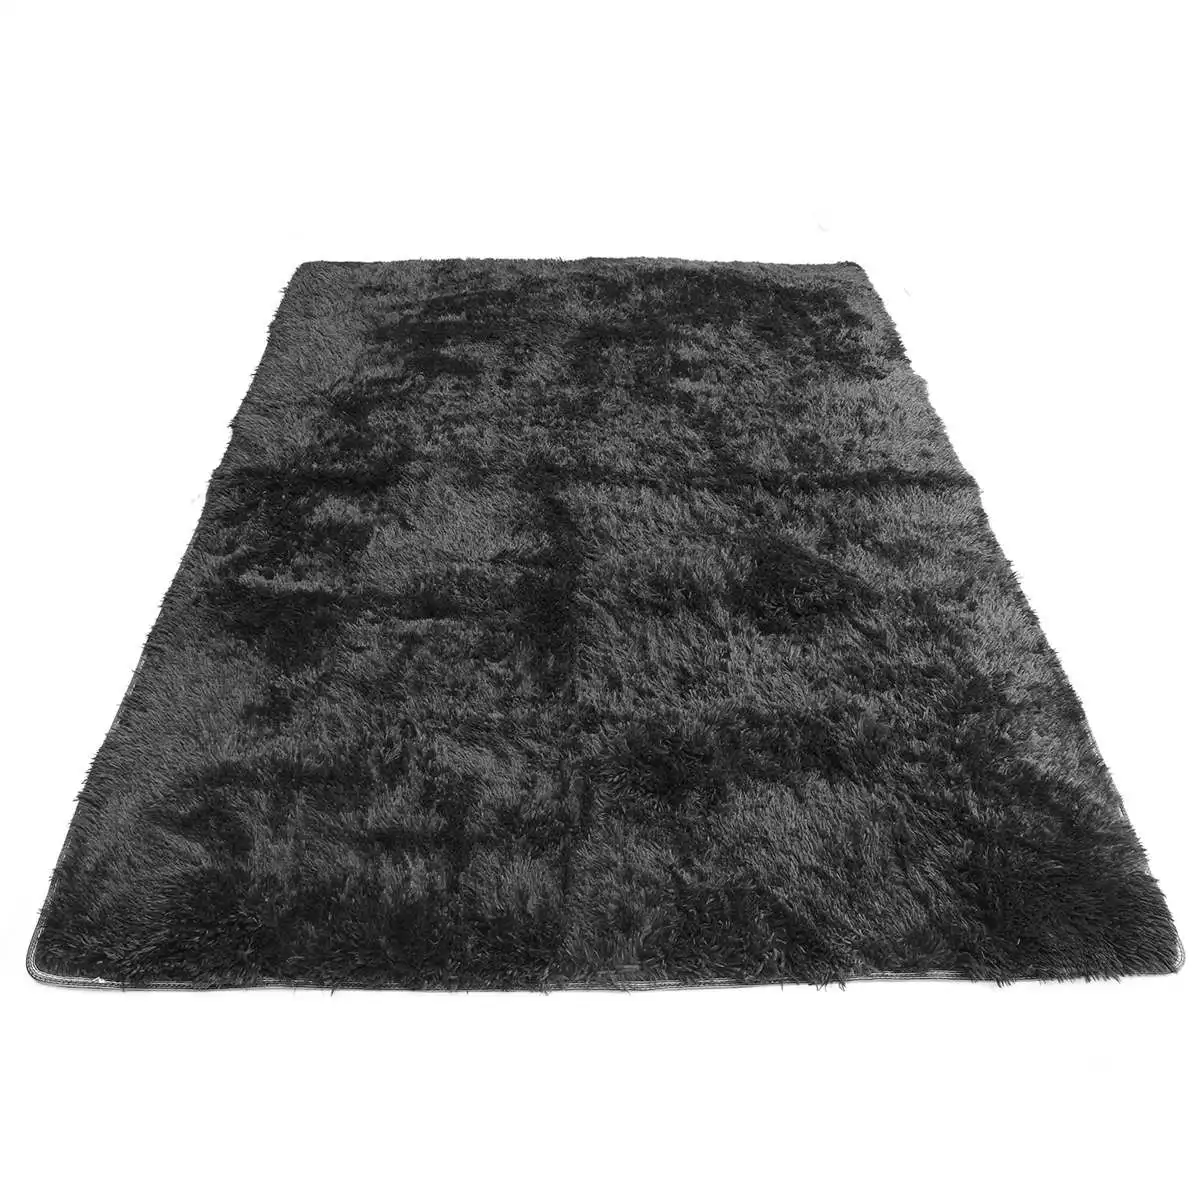 160x230 см большие мягкие ворсистые ковры противоскользящие пушистые коврики для гостиной коврик из искусственного меха подставки под горячее для гостиниц Декор для спальни напольный коврик - Цвет: Black